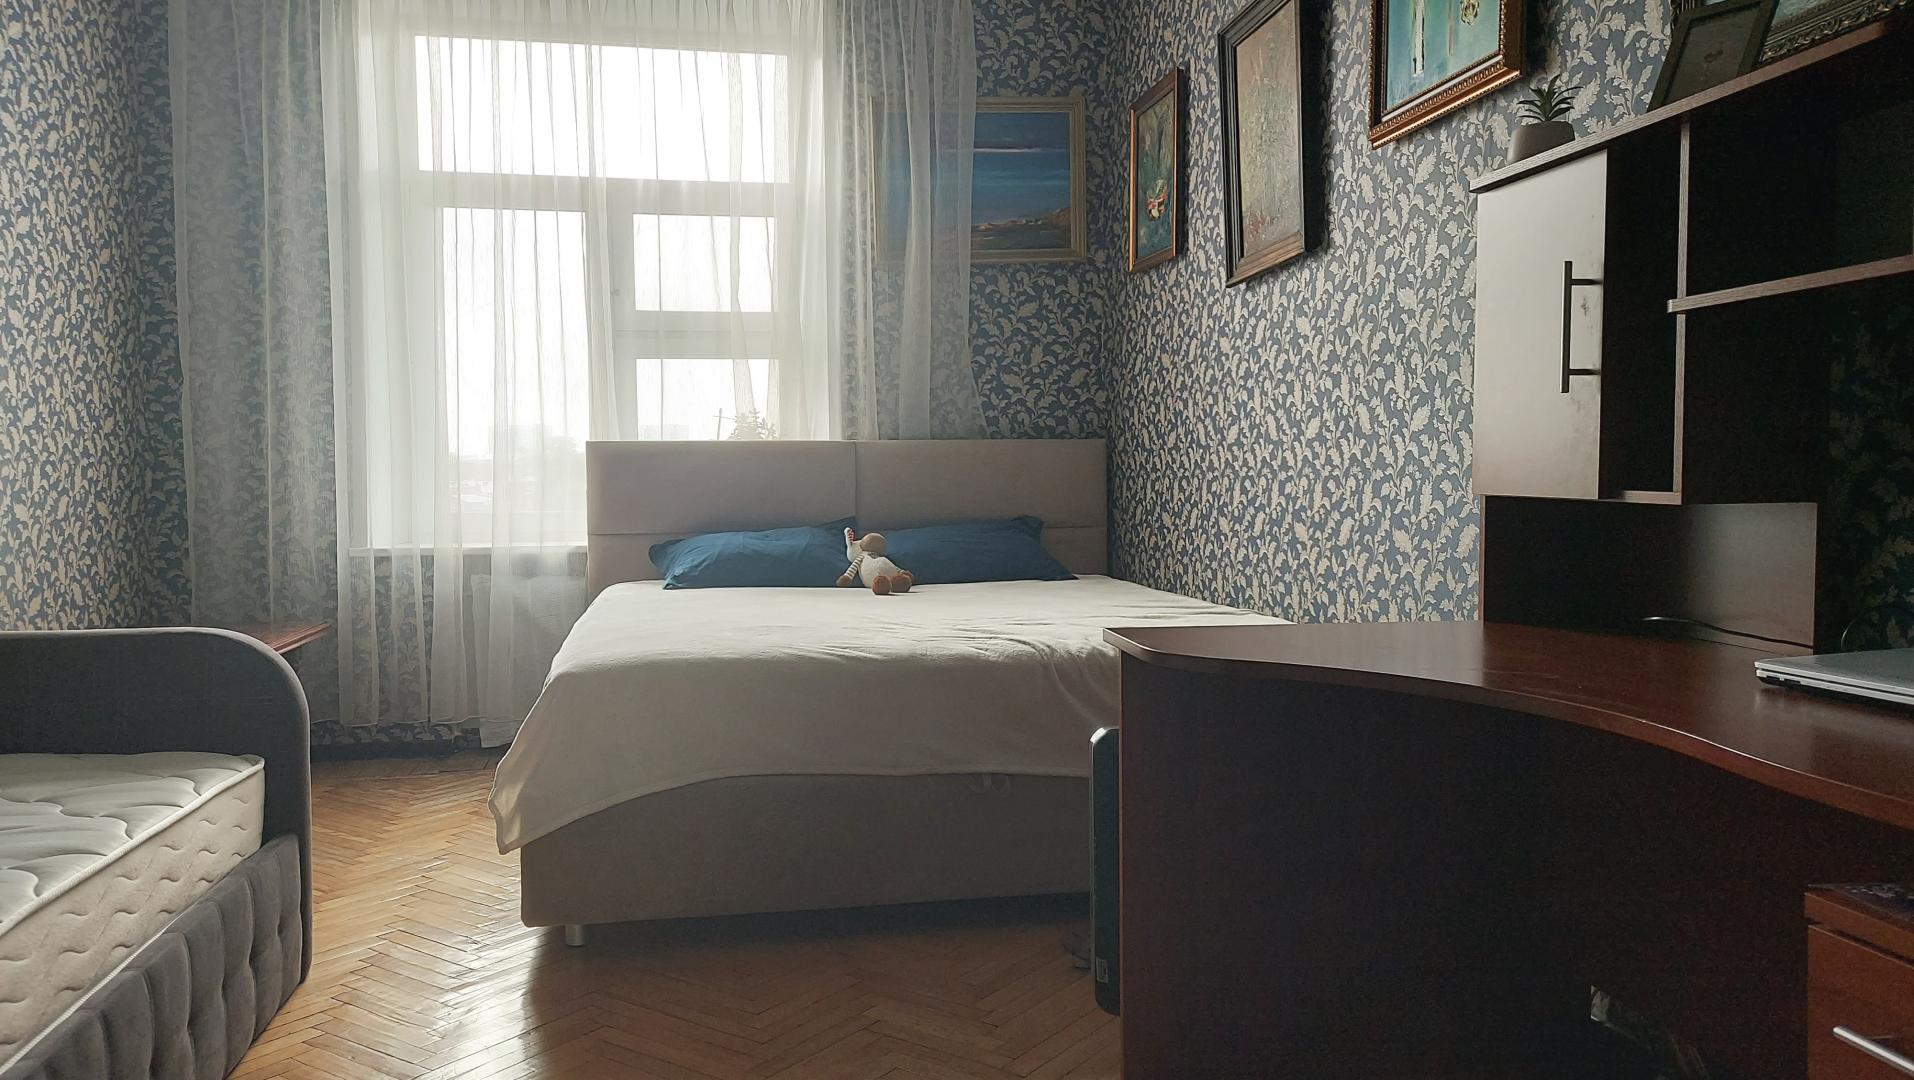 Продам квартиру в Москве по адресу Большой Матросский переулок, 1, площадь 72 квм Недвижимость Москва (Россия)  Хороший двор, новая детская и спортивная площадки, есть отдельная площадка для выгула собак